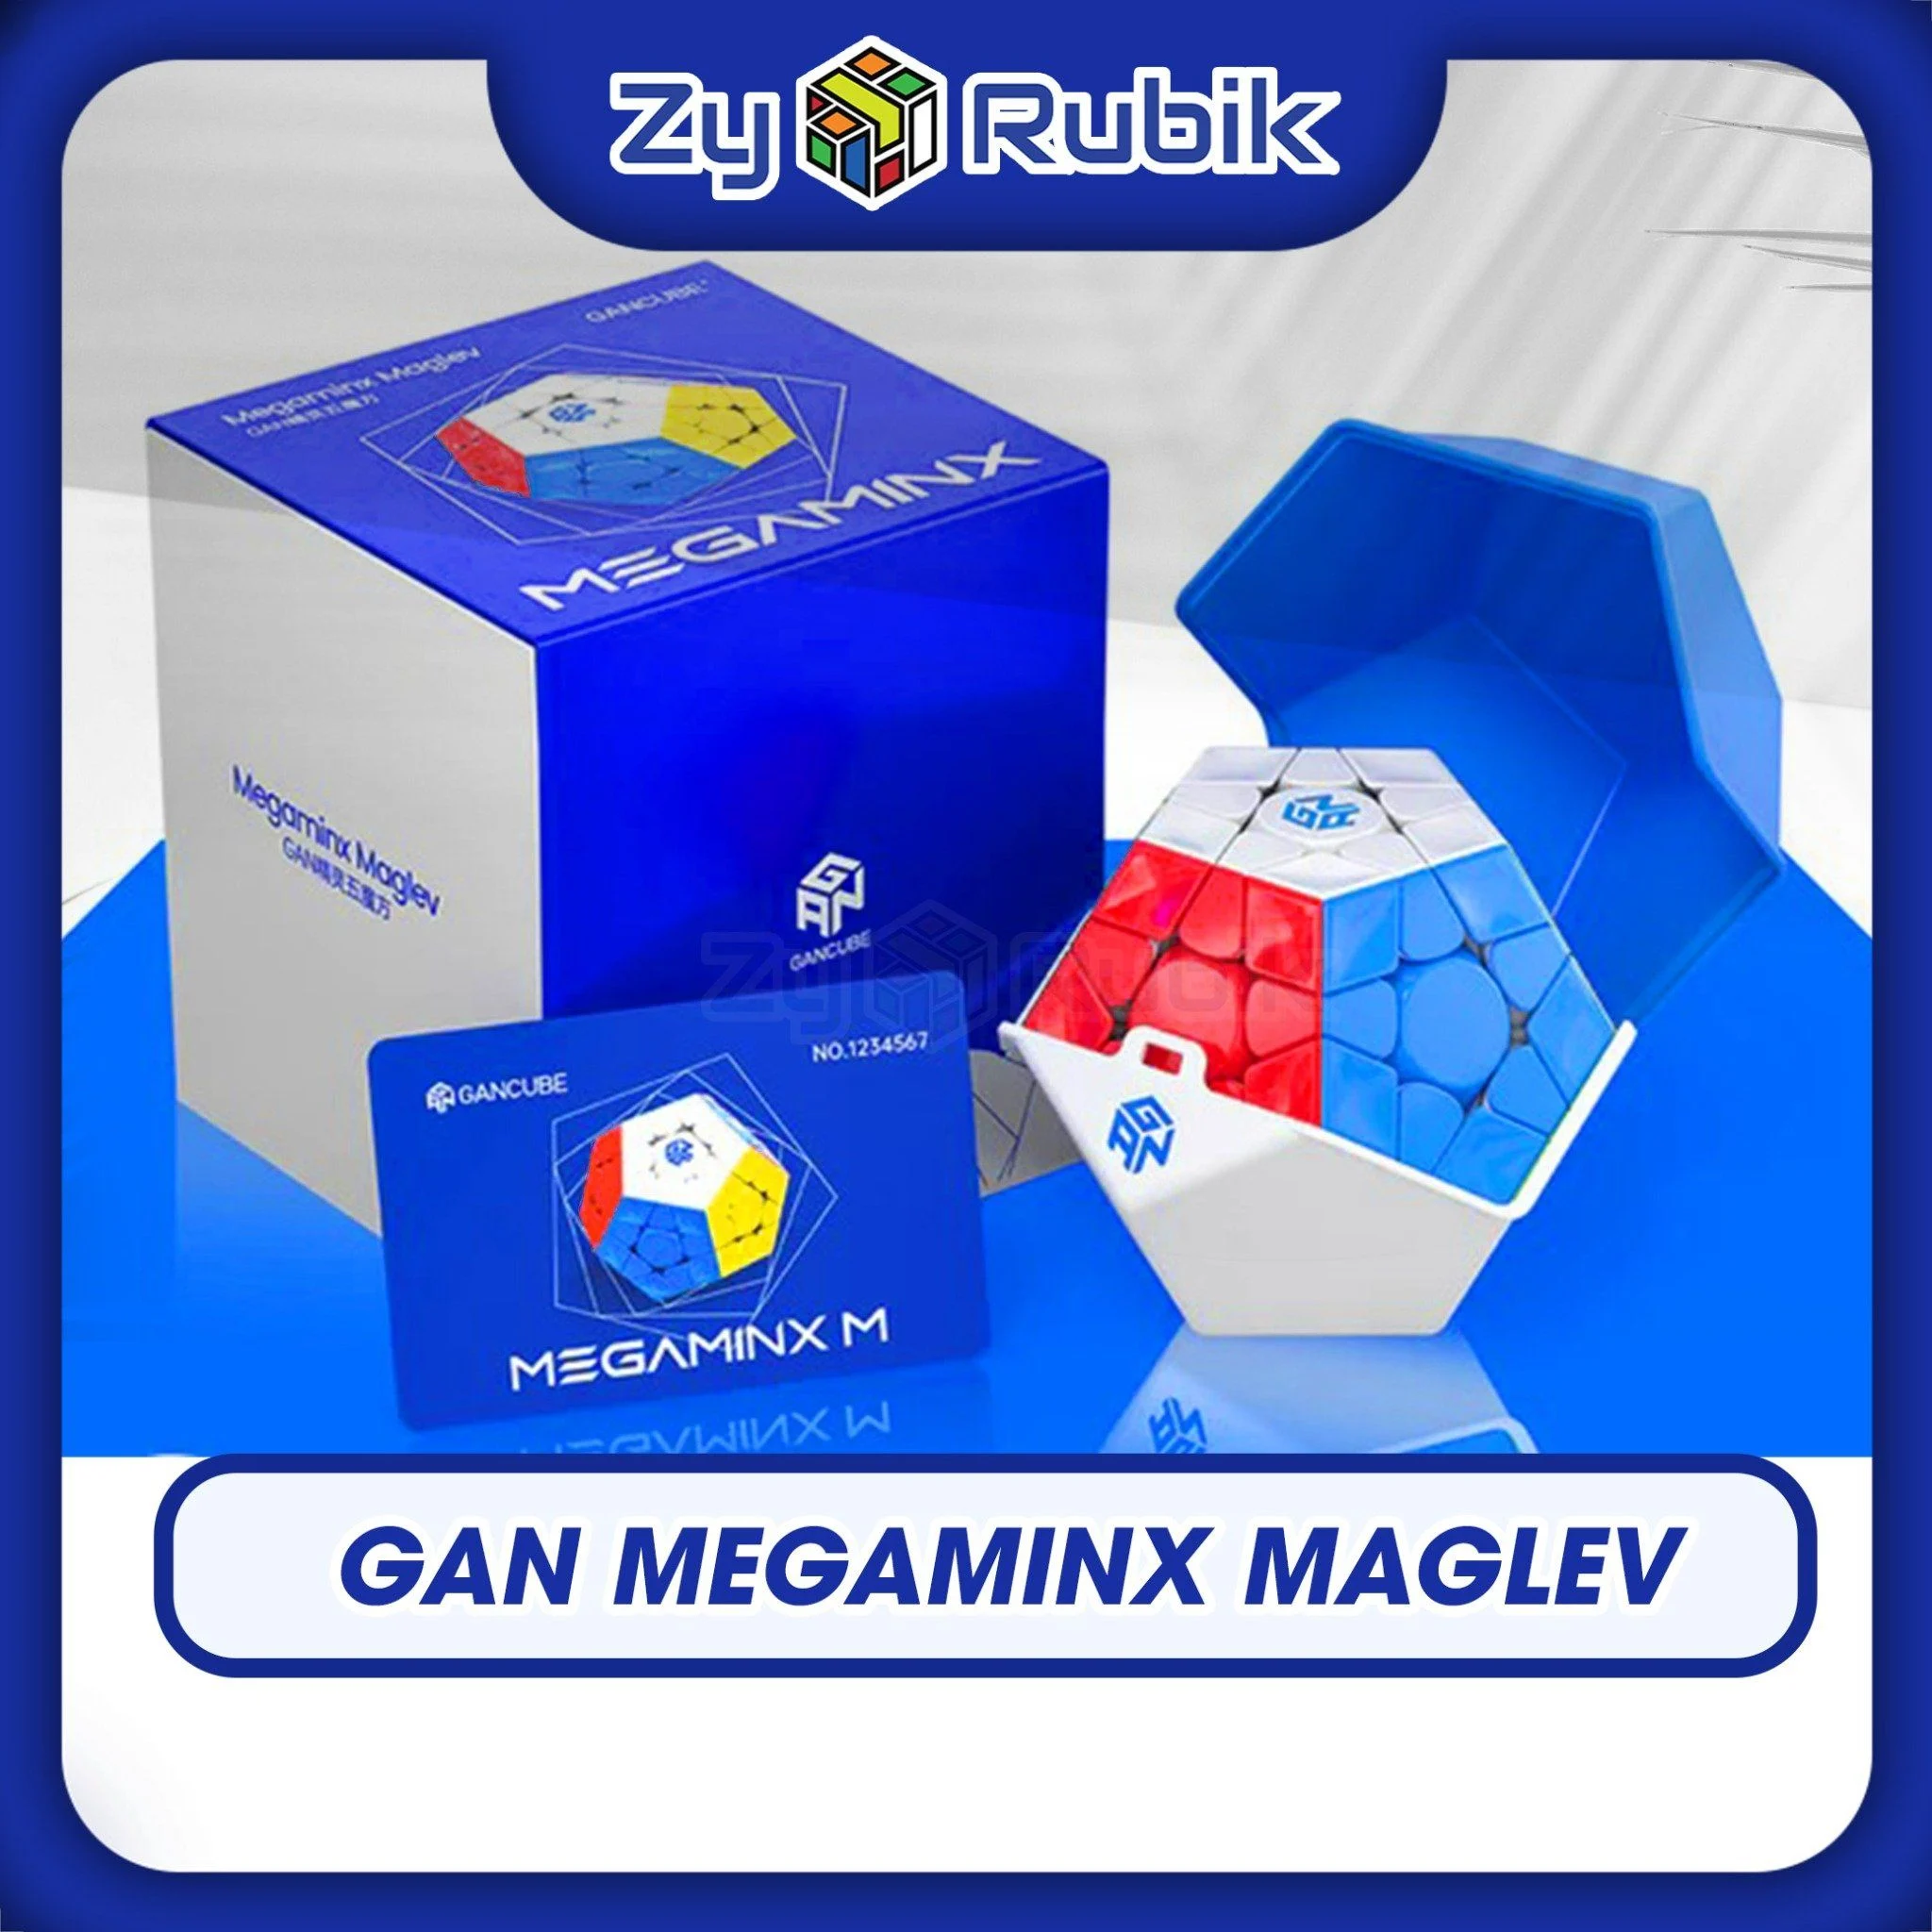 Đánh giá Gan Megaminx Maglev: Sự đột phá trong thế giới Rubik